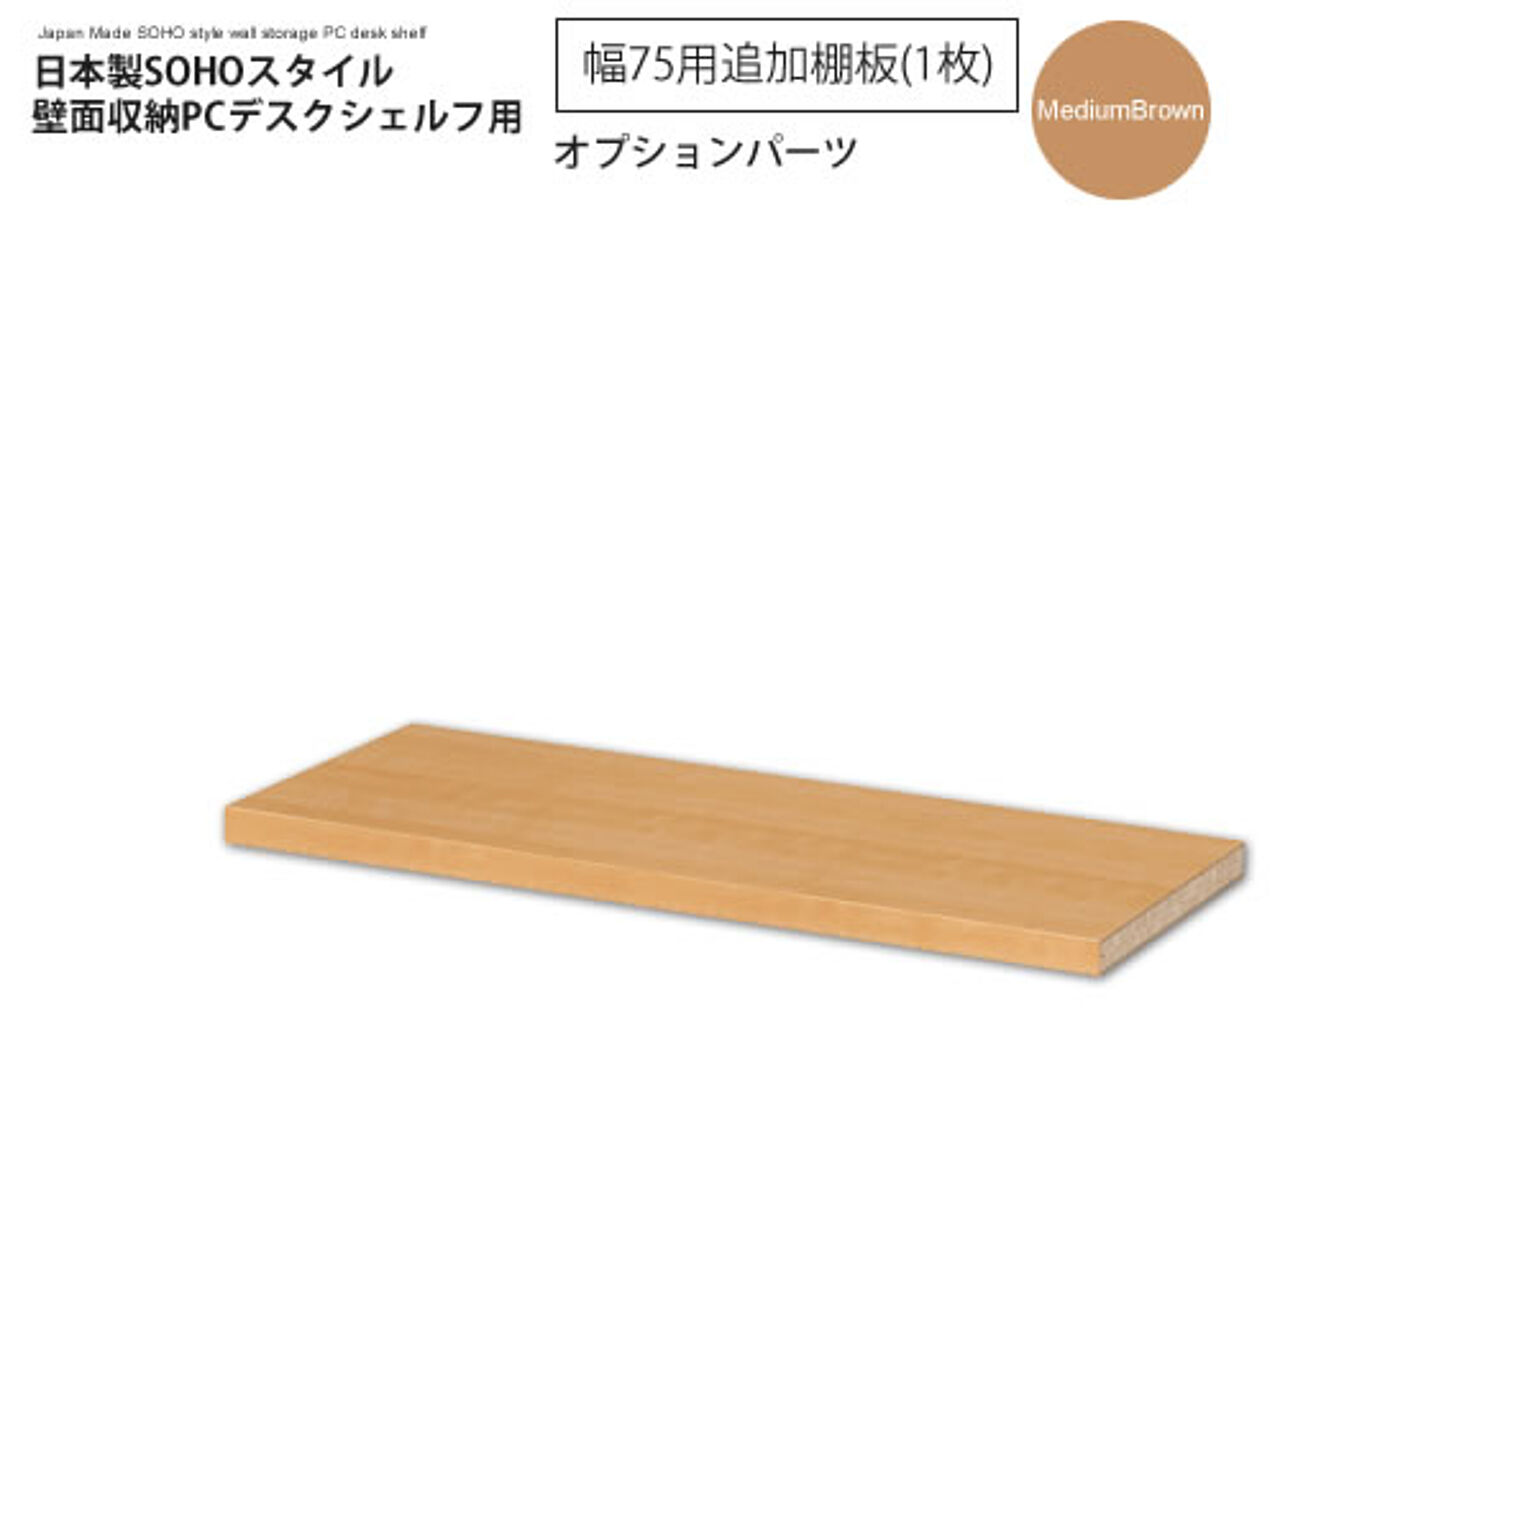 幅75追加棚板（1枚）：ミディアムブラウン ： 日本製SOHOスタイル壁面収納PCデスクシェルフ用オプションパーツ【paceed】 ブラウン(brown) 低ホルムアルデヒド 